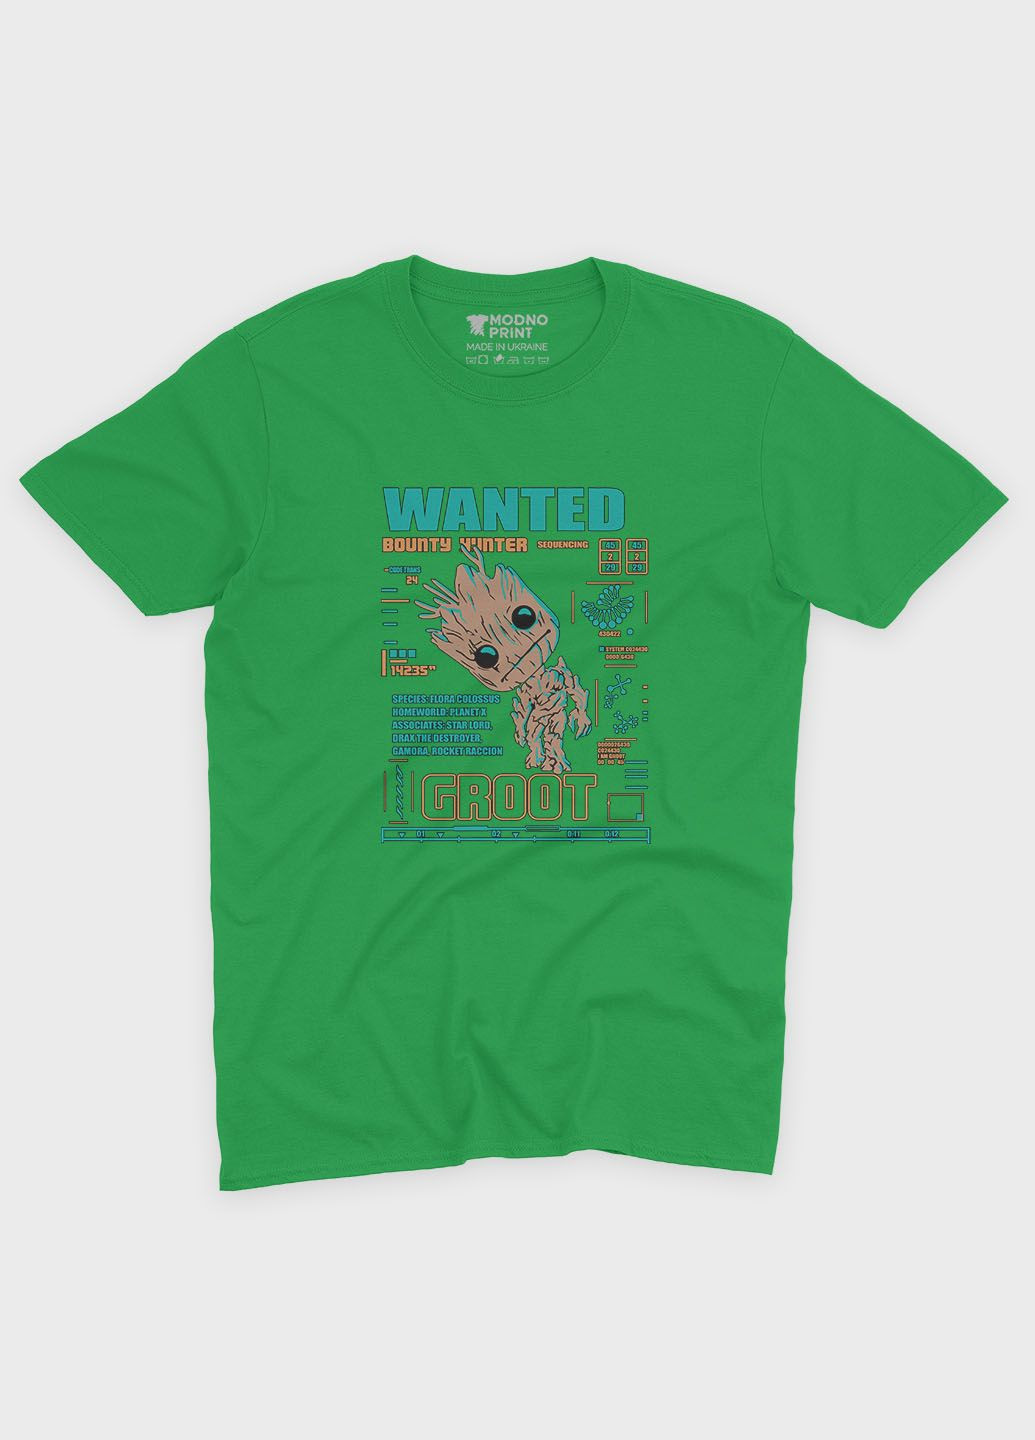 Зелена демісезонна футболка для хлопчика з принтом супергероїв - вартові галактики (ts001-1-keg-006-017-011-b) Modno